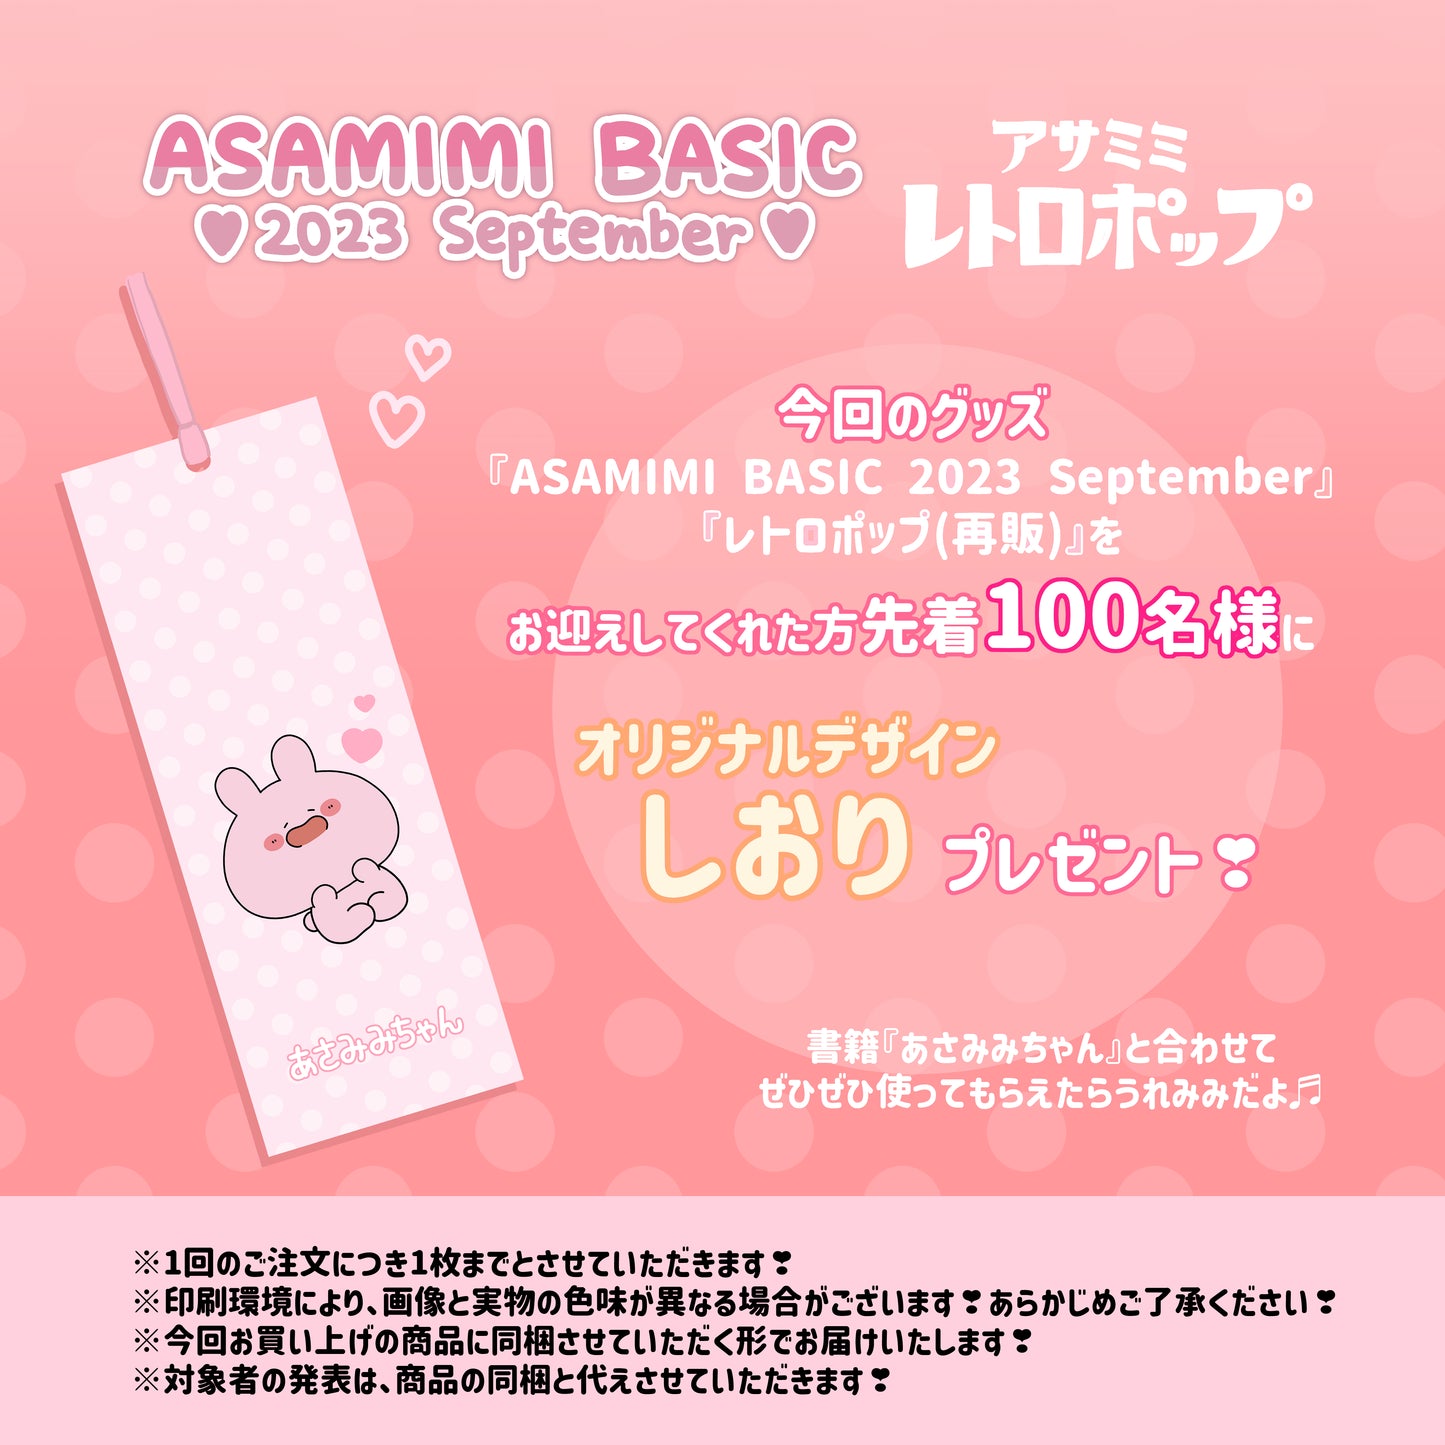 [Asamimi-chan] File trasparente A4 pieno di Pienga (ASAMIMI BASIC 2023 settembre)